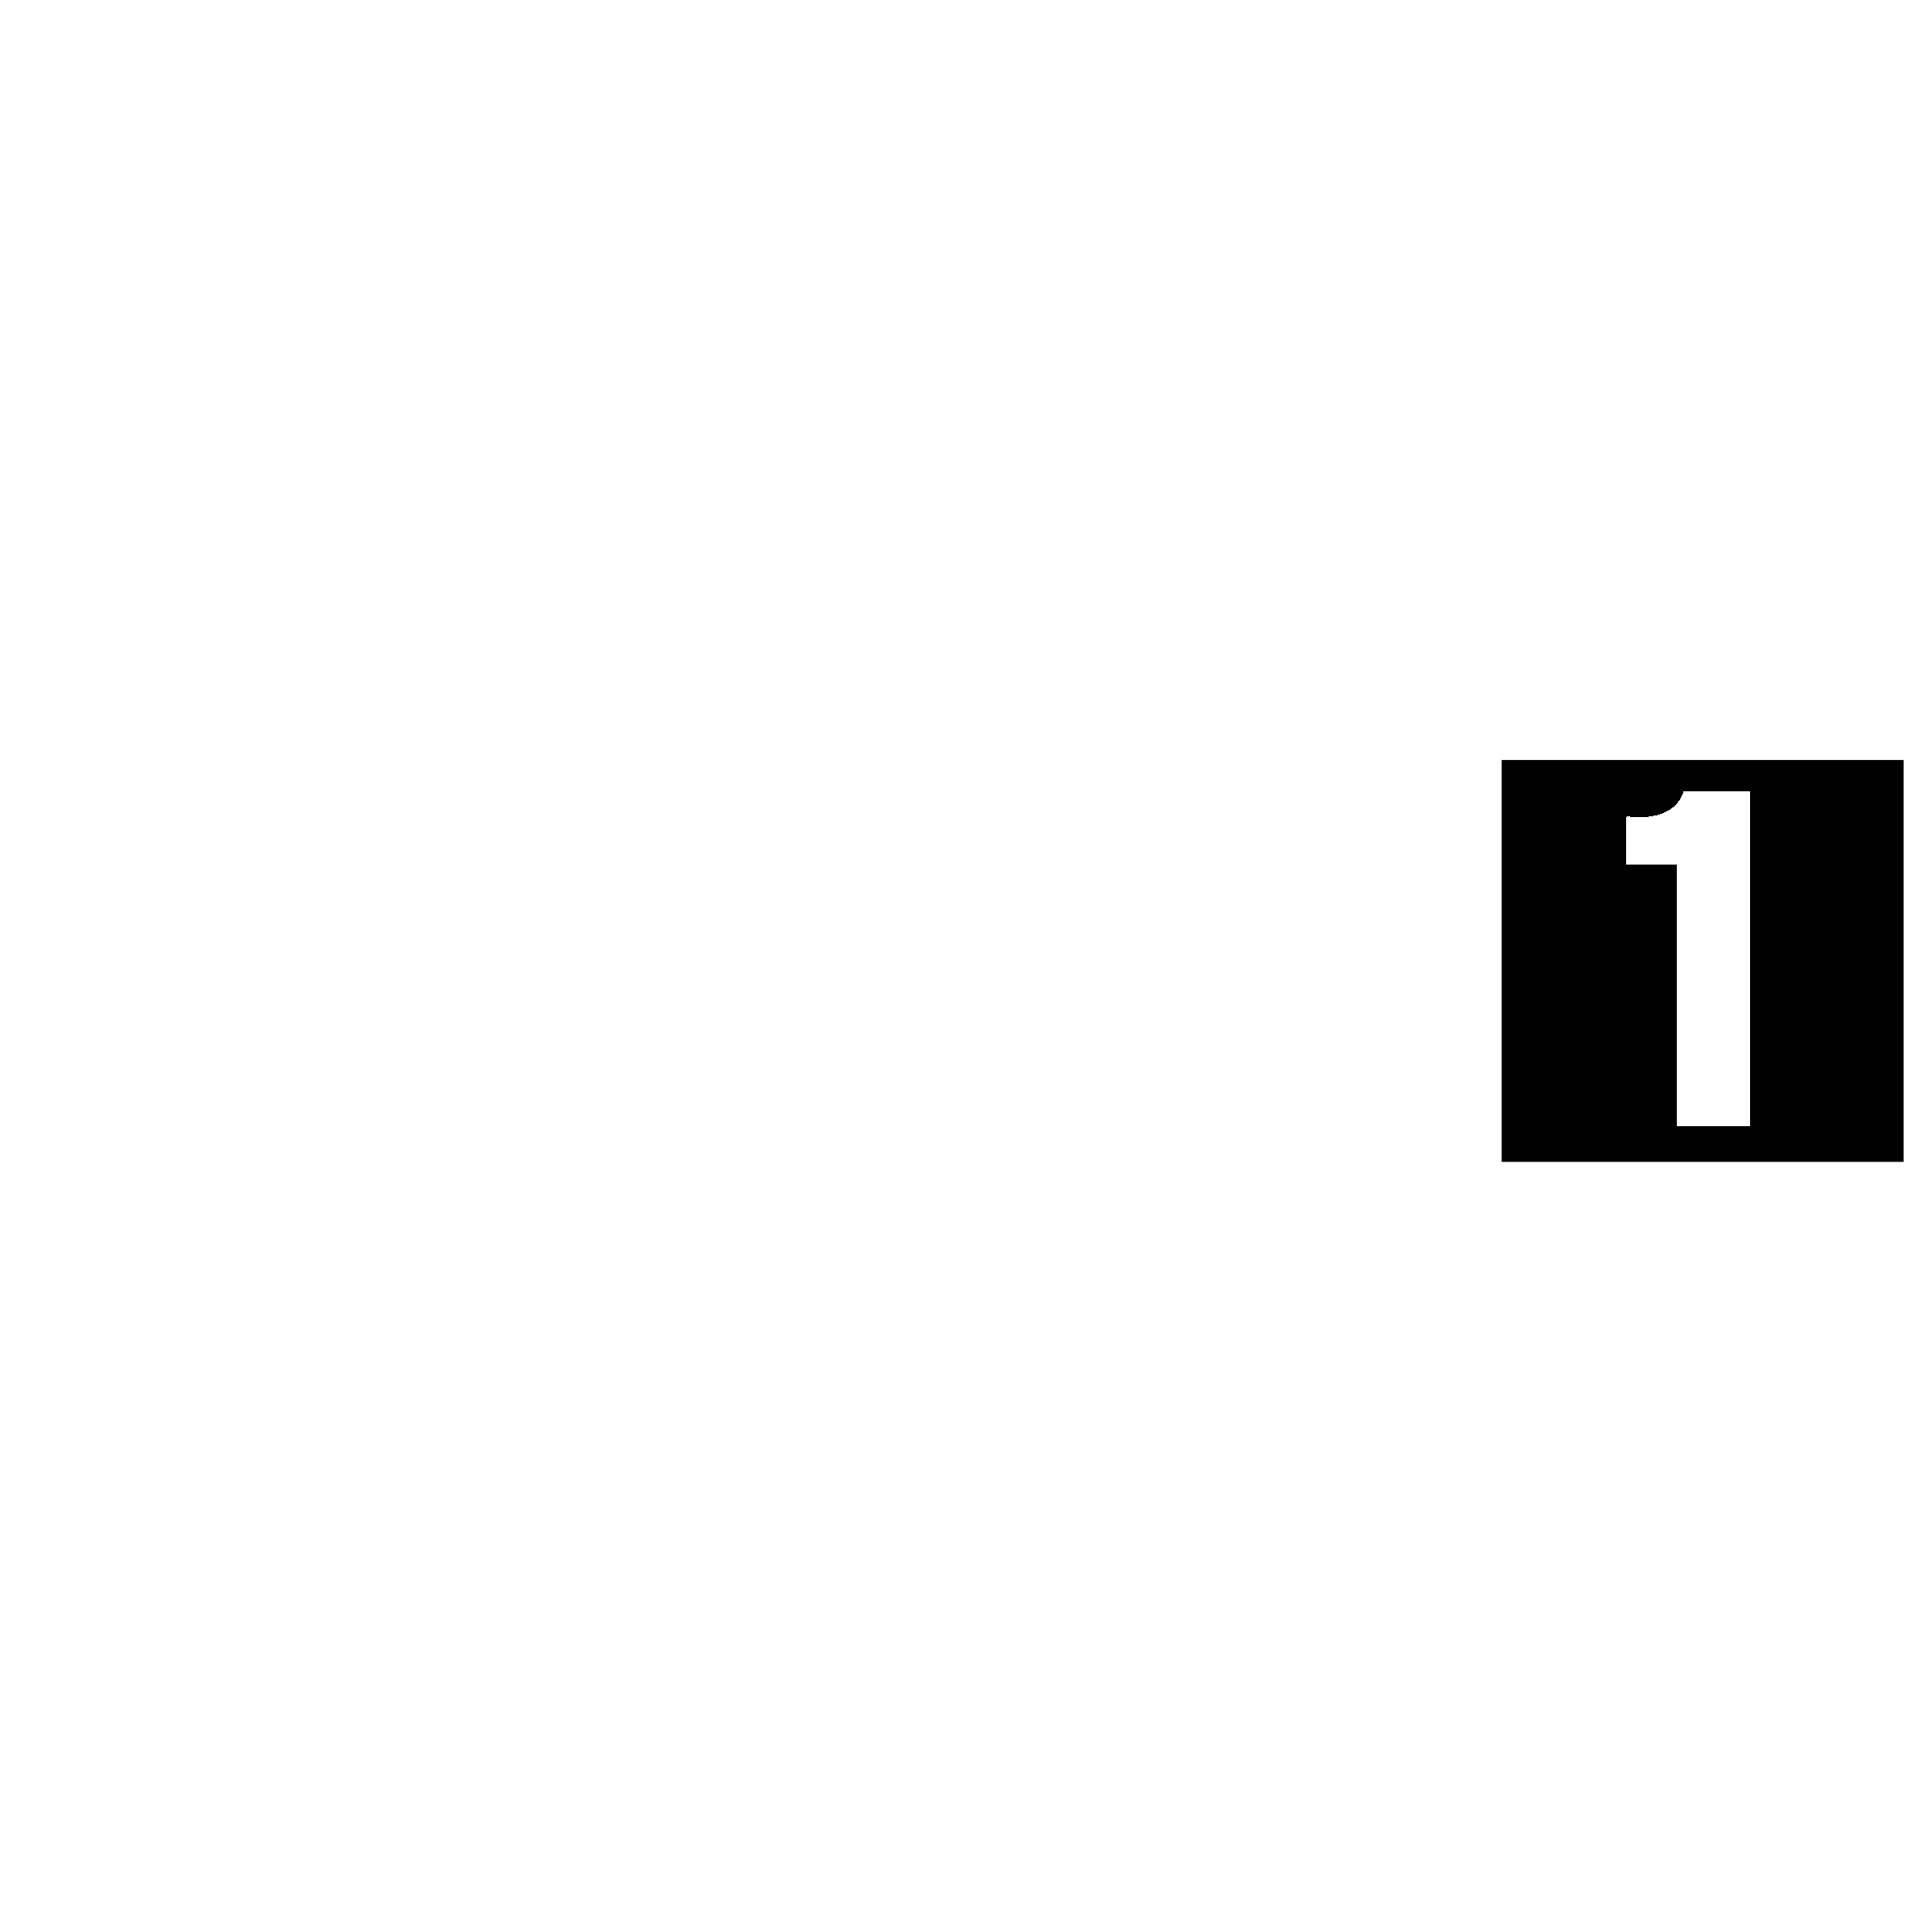 mobil-1-logo-black-and-white